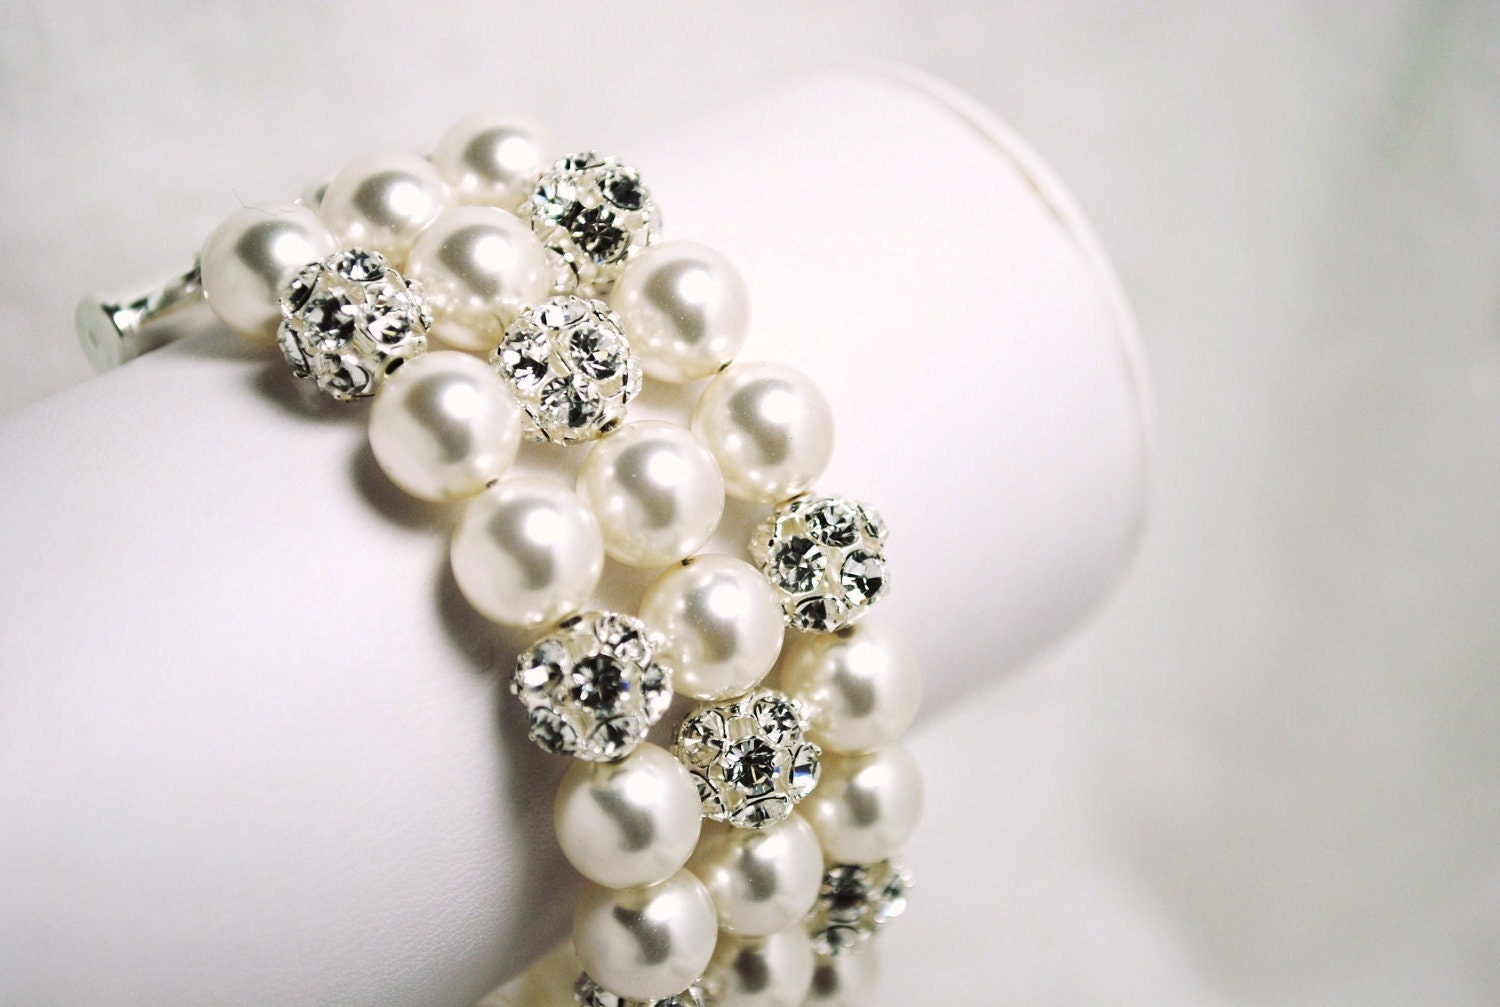 Bridal Bracelet, White Pearl and Rhinestone 3 Strand Wedding Bracelet, Elegant, Swarovski Pearls, Thick, B244B10